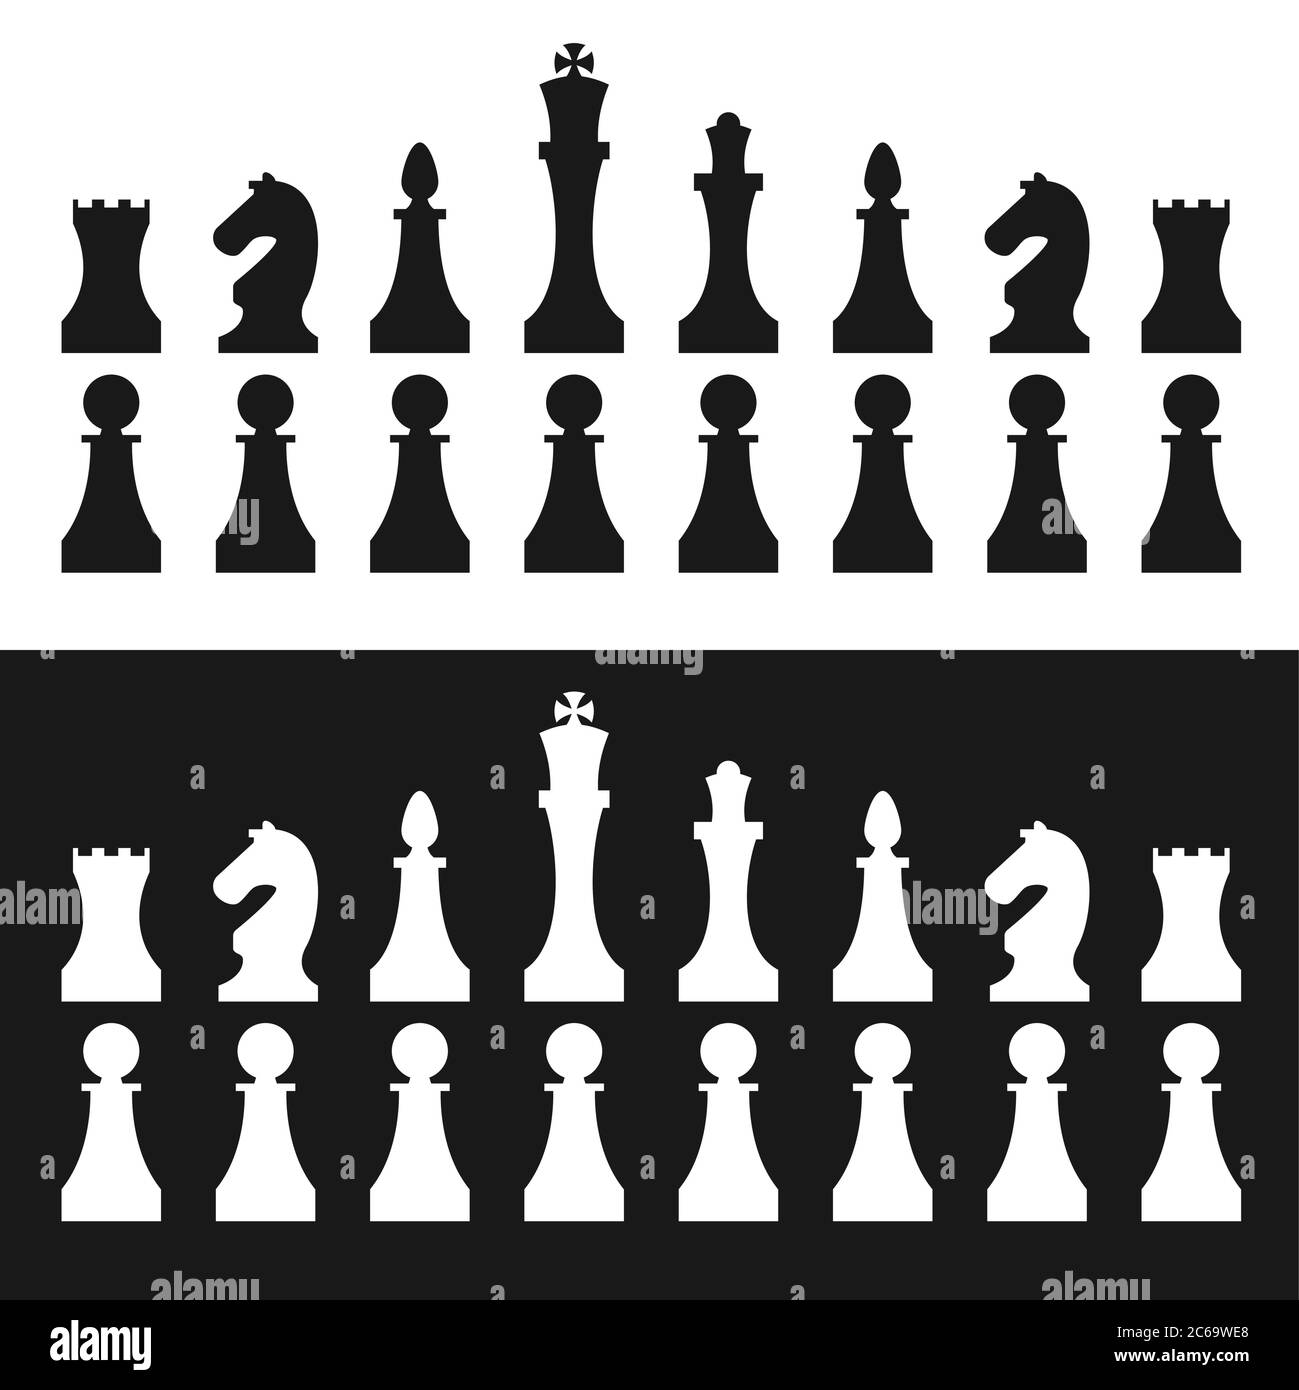 Chess pieces. Vector. Stock Vector